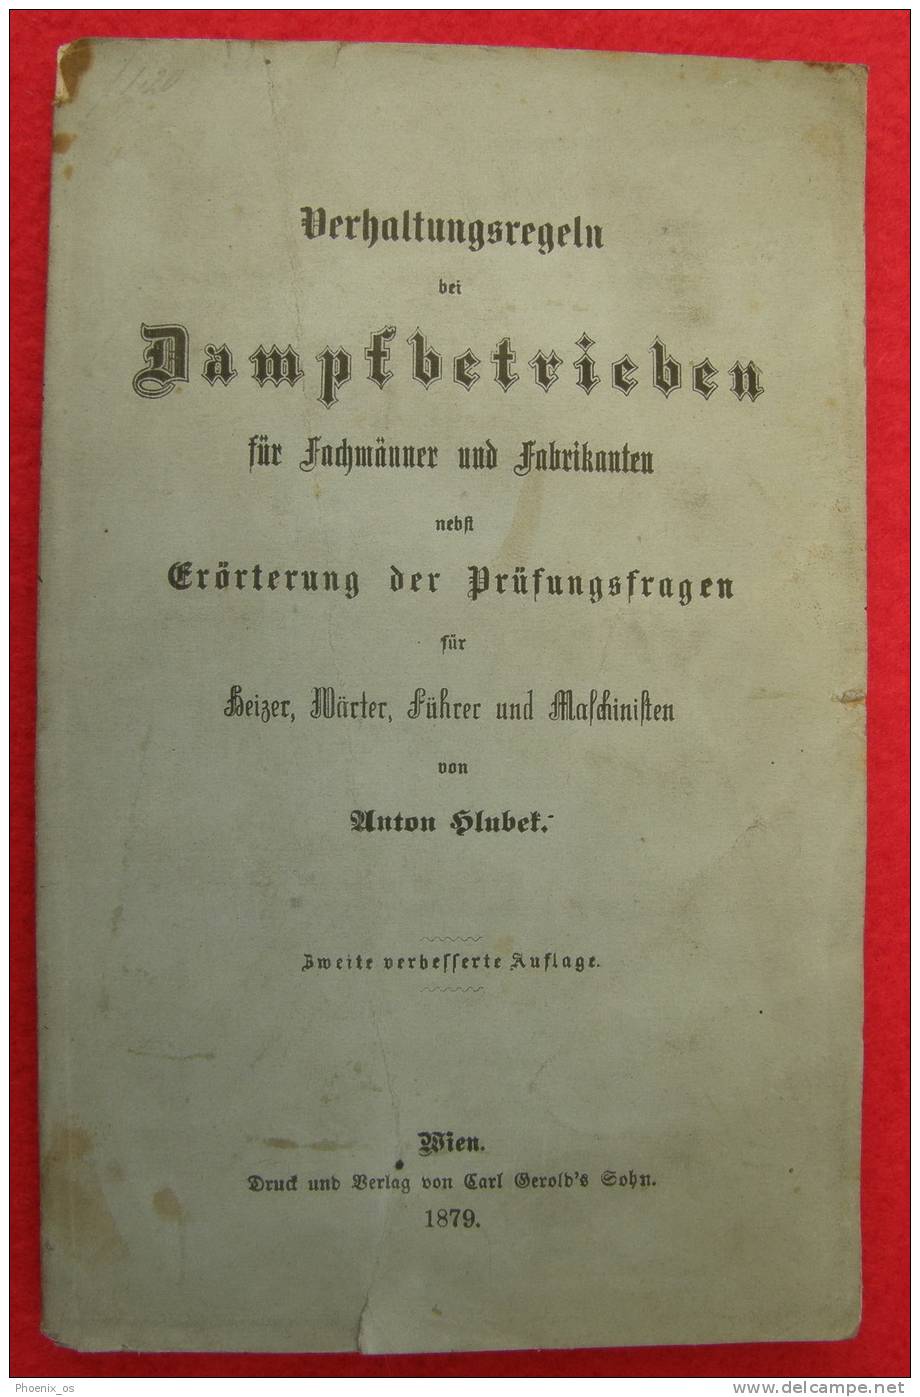 DAMPFBETRIEBEN - Wien, 1879. - Technik